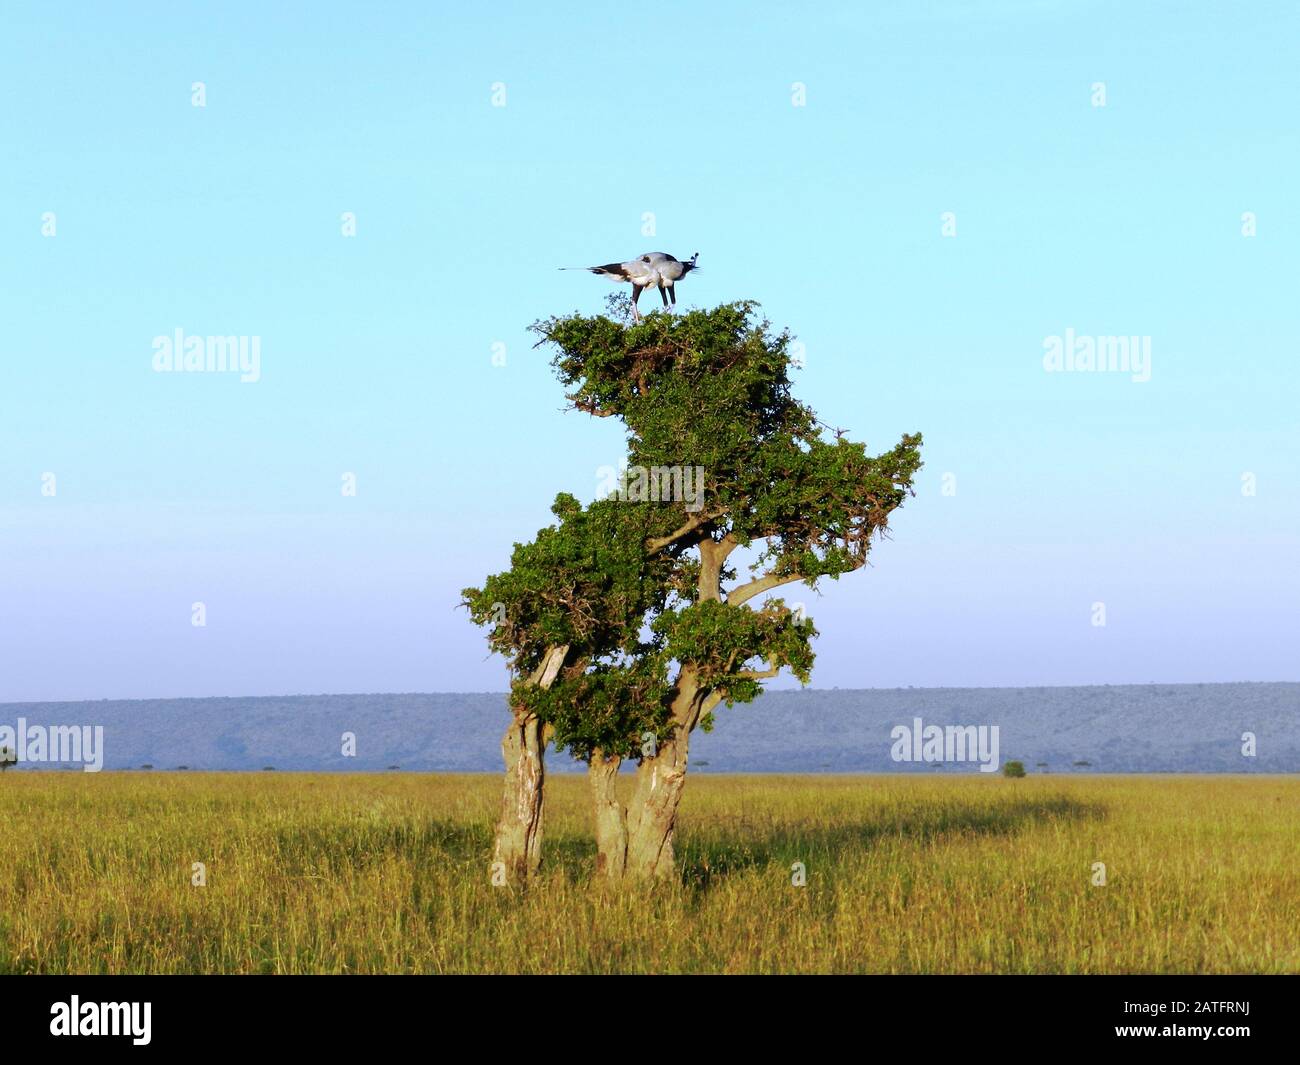 Two secretary bird in love on acacia, Kenya Stock Photo